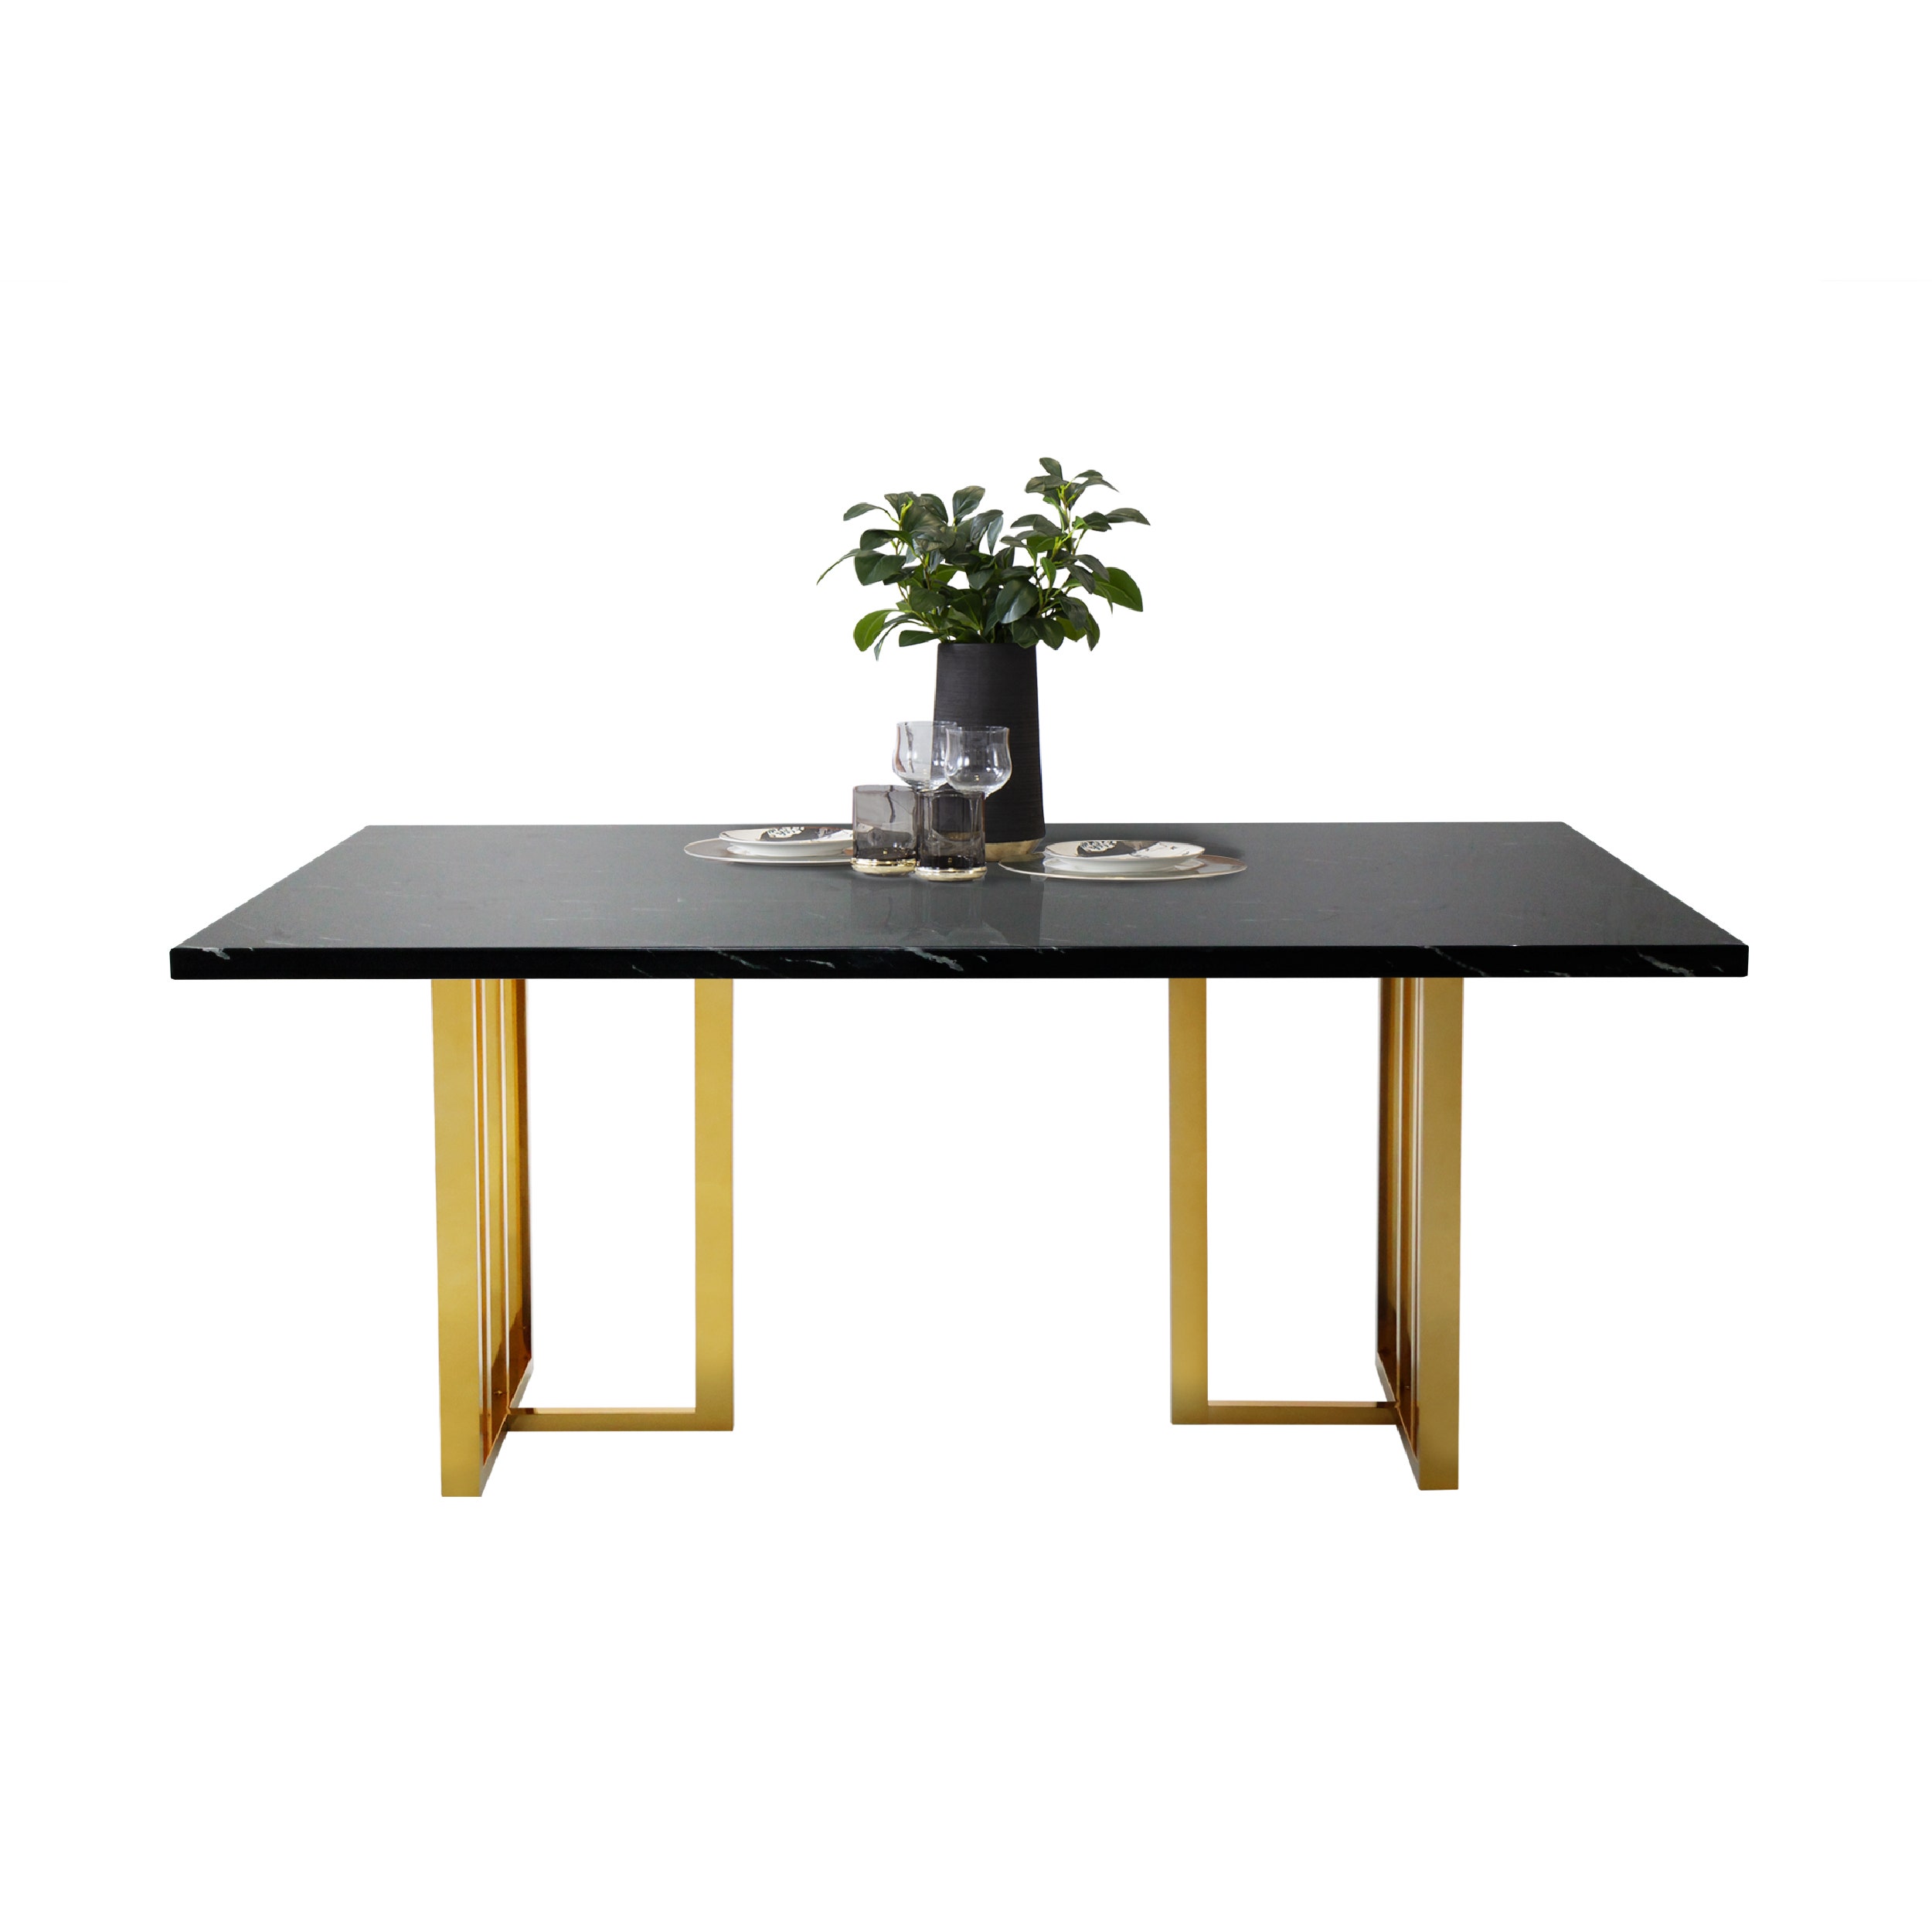 โต๊ะอาหาร รุ่น VAGON หิน NERO MARQUINA สีดำ01